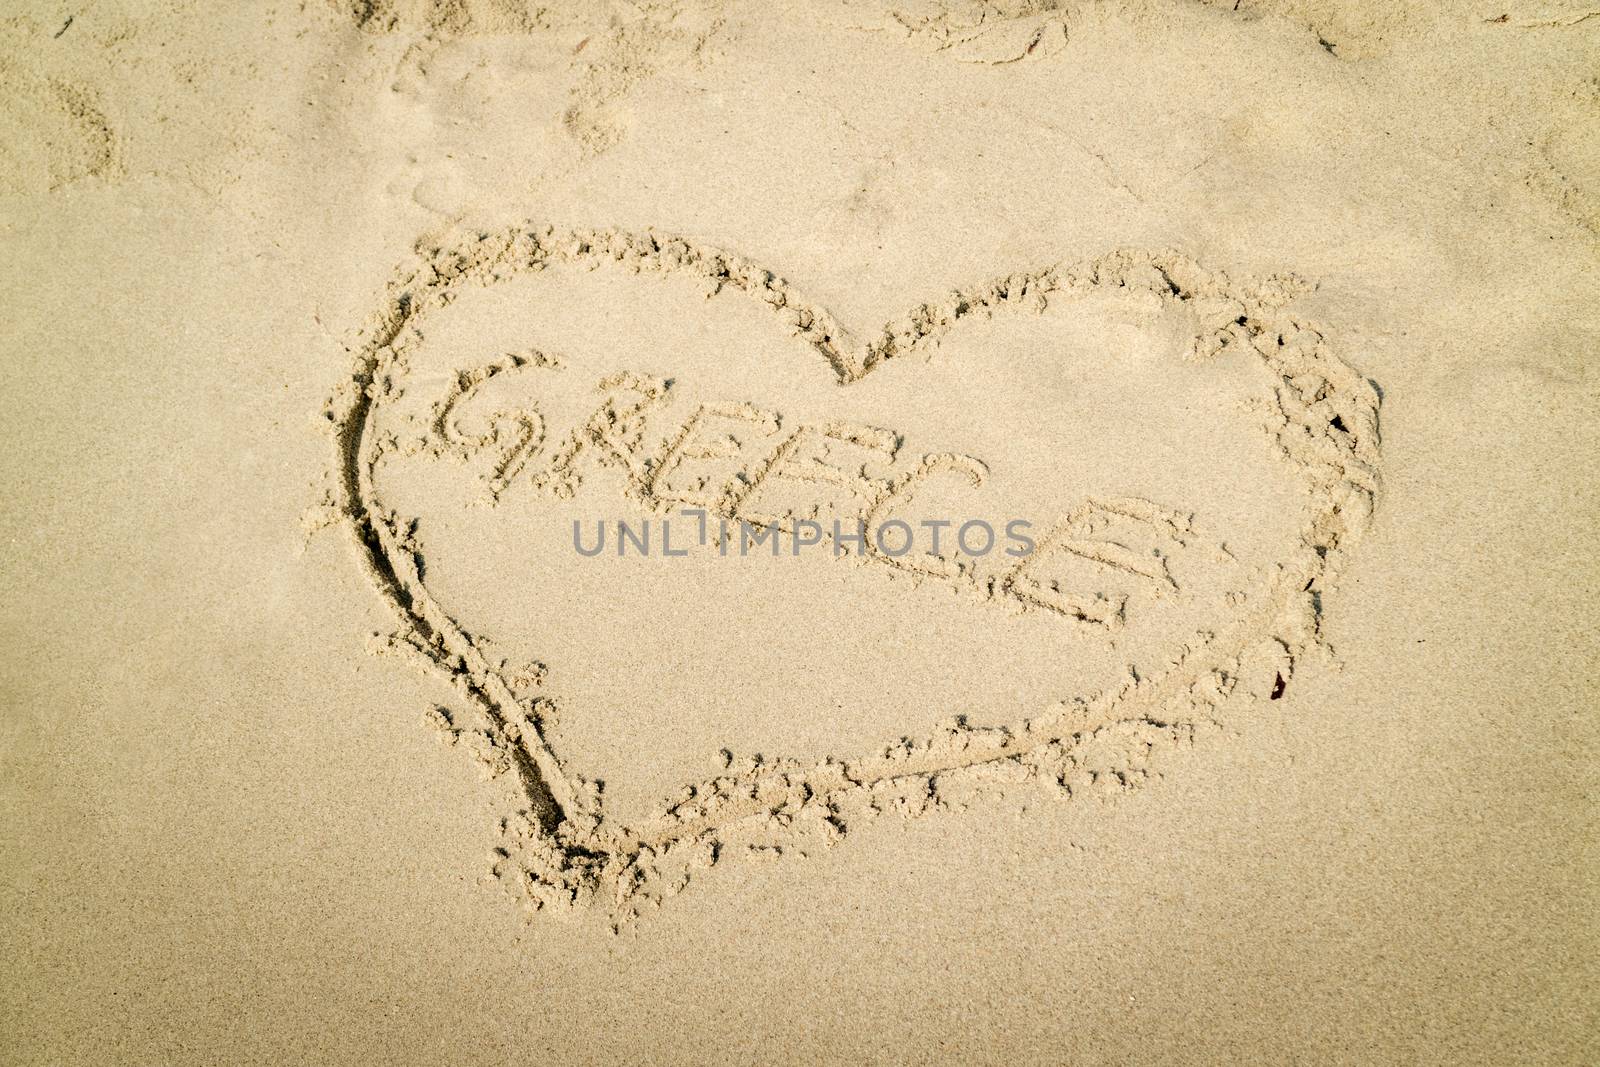 Heart shaped word Greece written on the sandy beach.